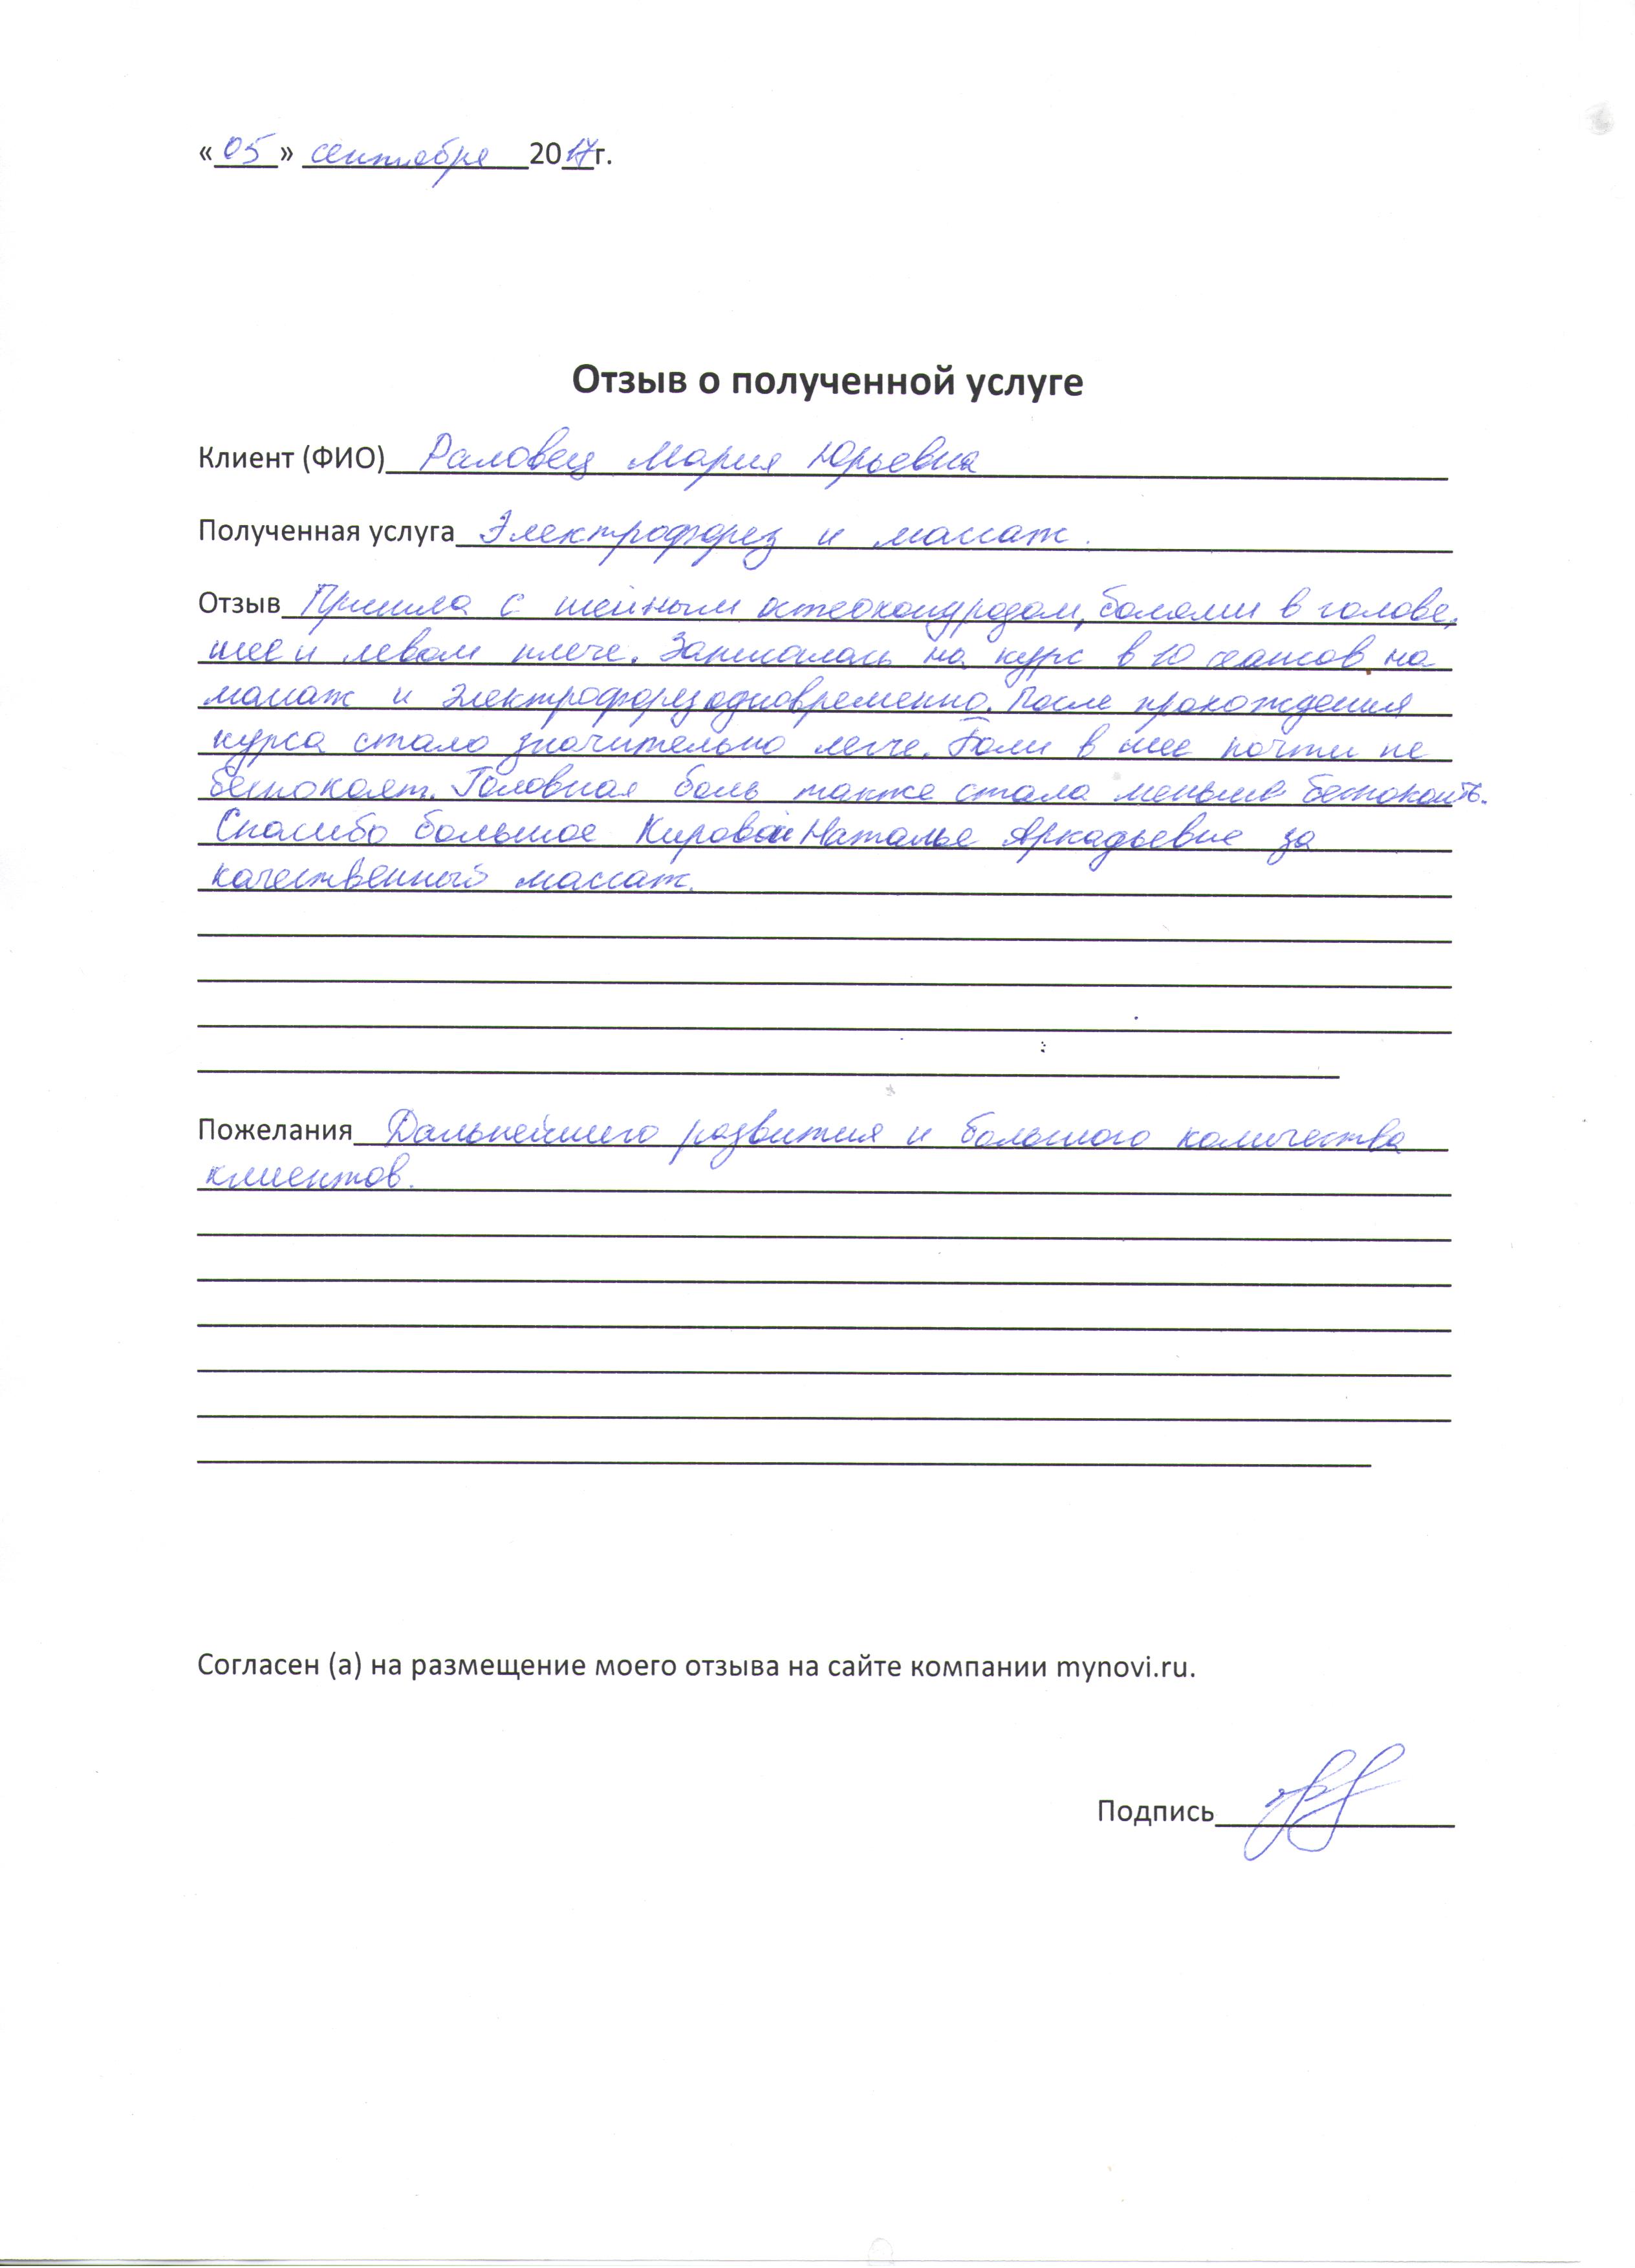 Отзывы о физиотерапии от Раловец Марии Юрьевны